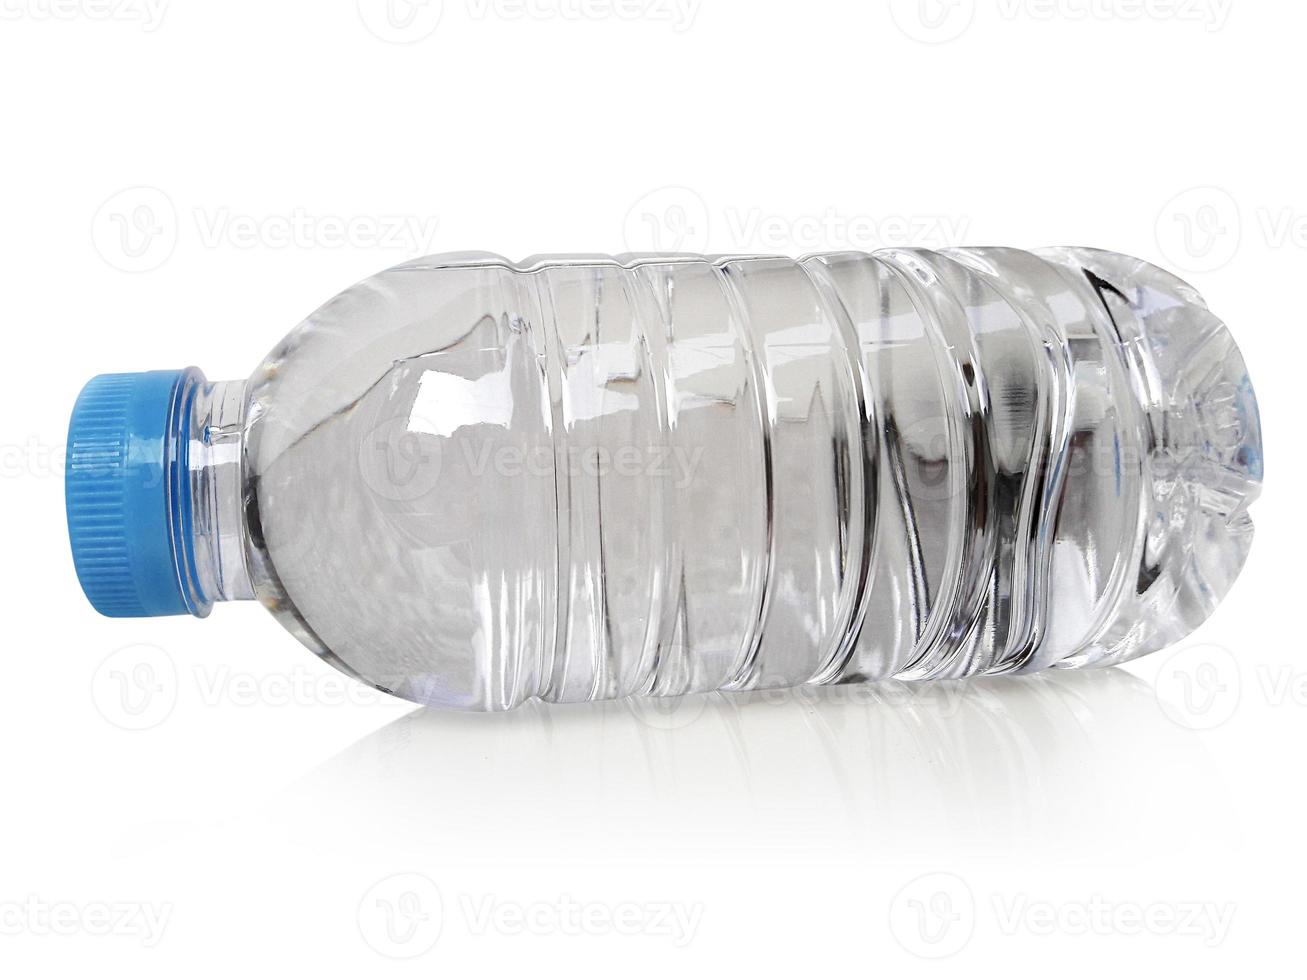 bottiglia d'acqua pulita e chiara vuota isolata con isolato su uno sfondo bianco foto